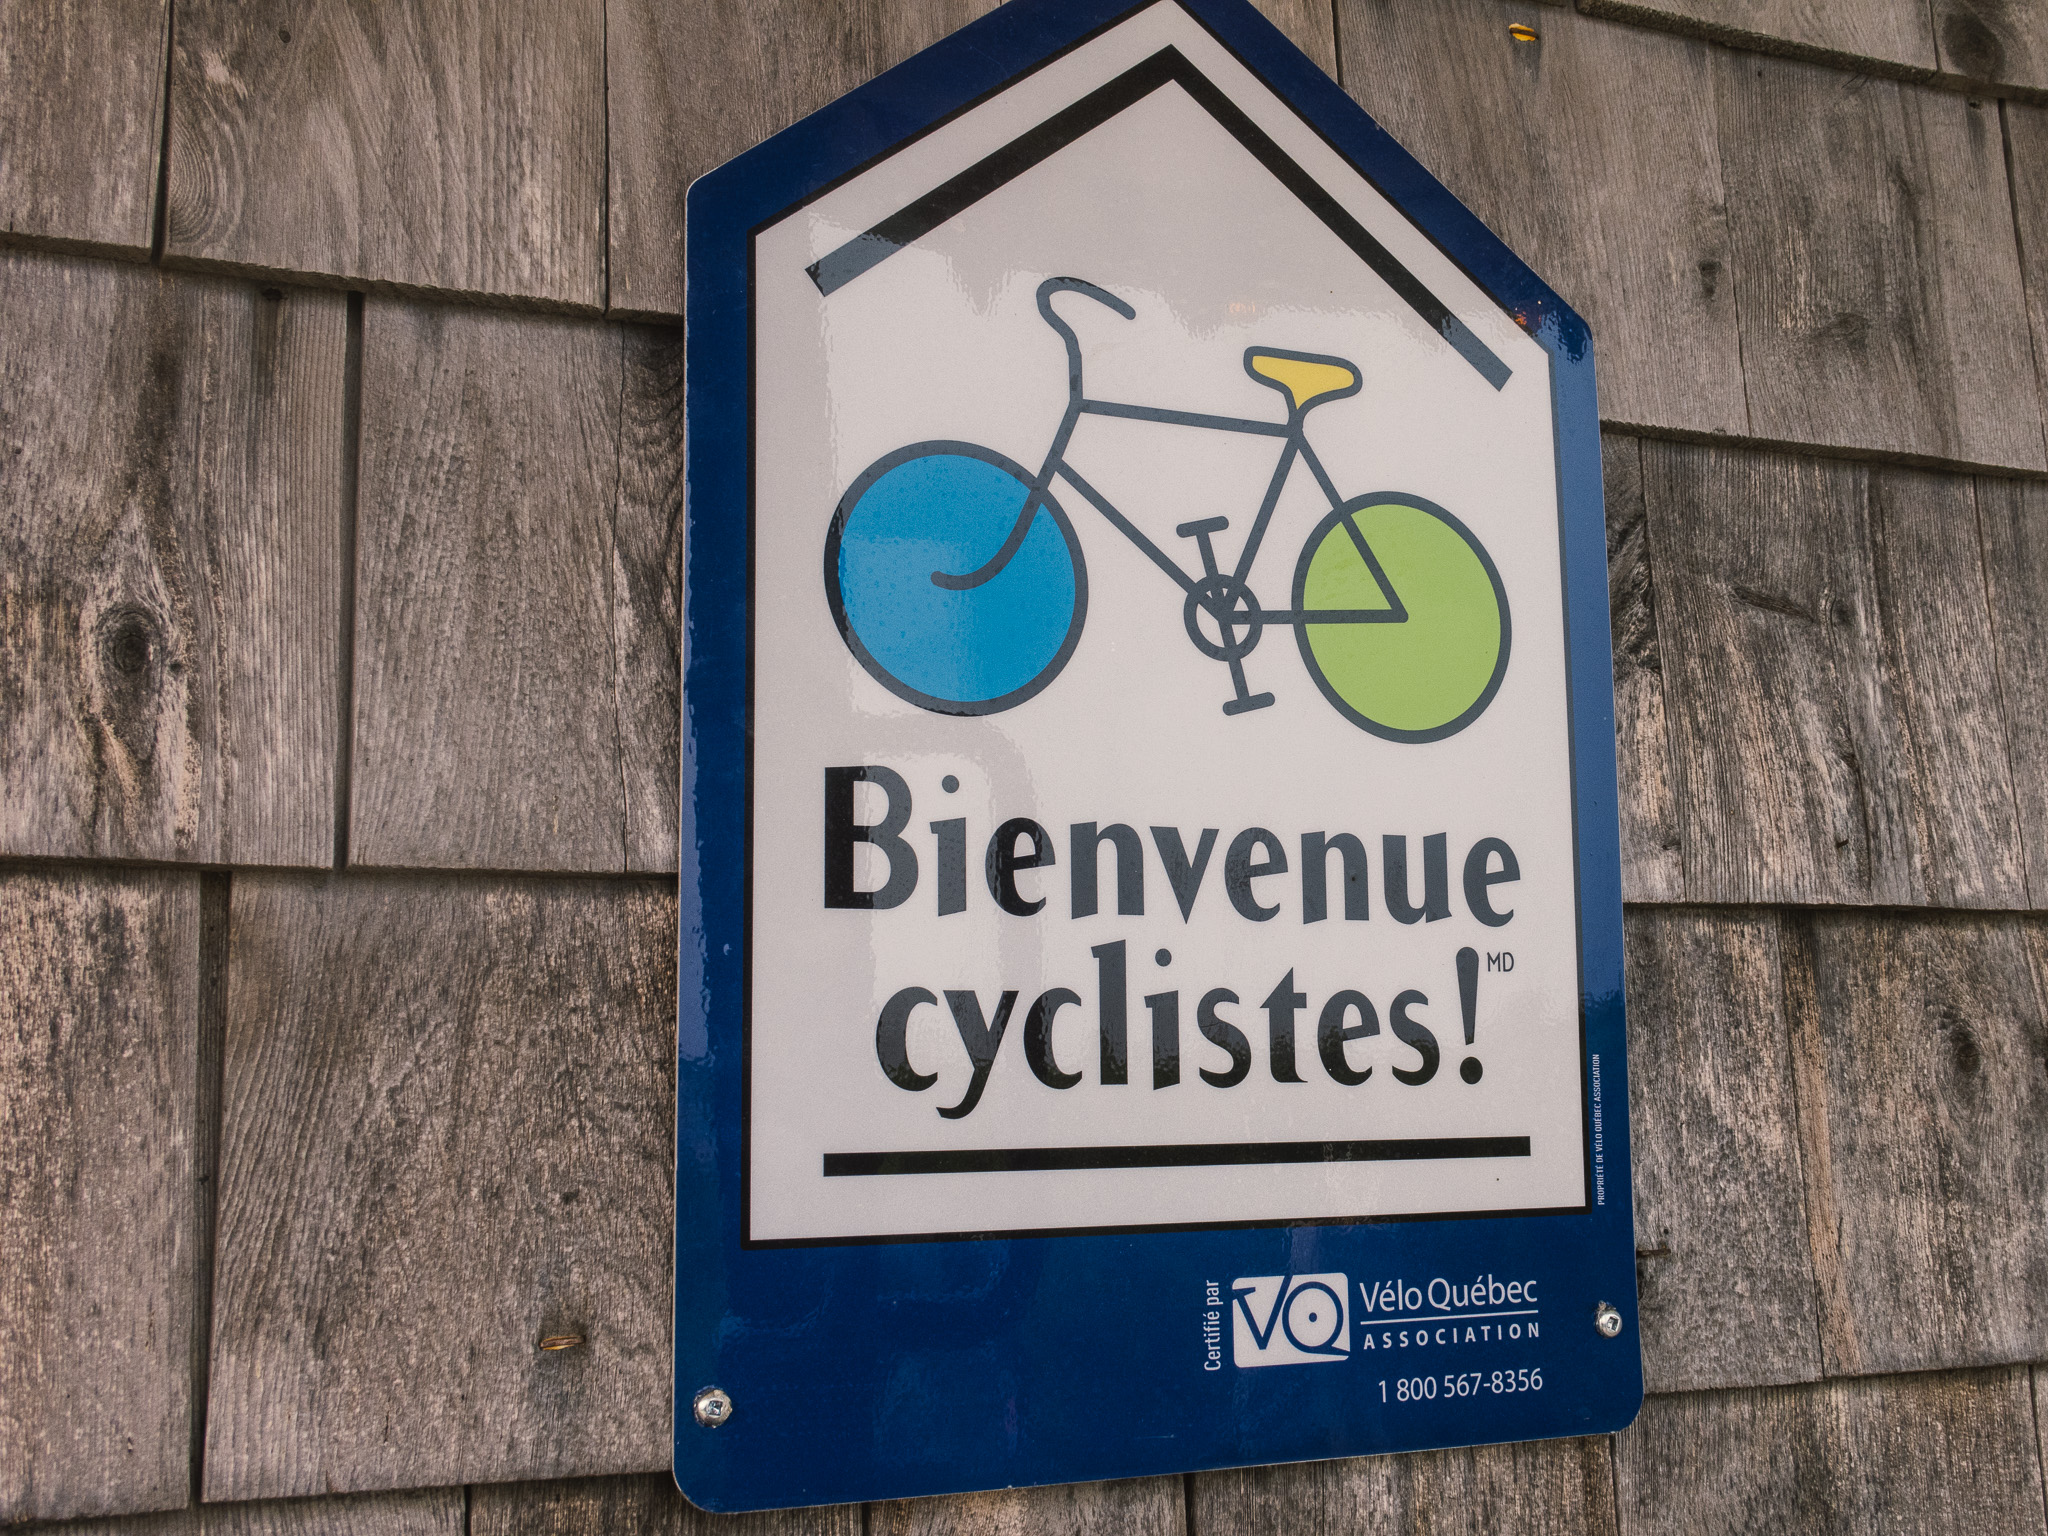 Bienvenue cyclistes! sign